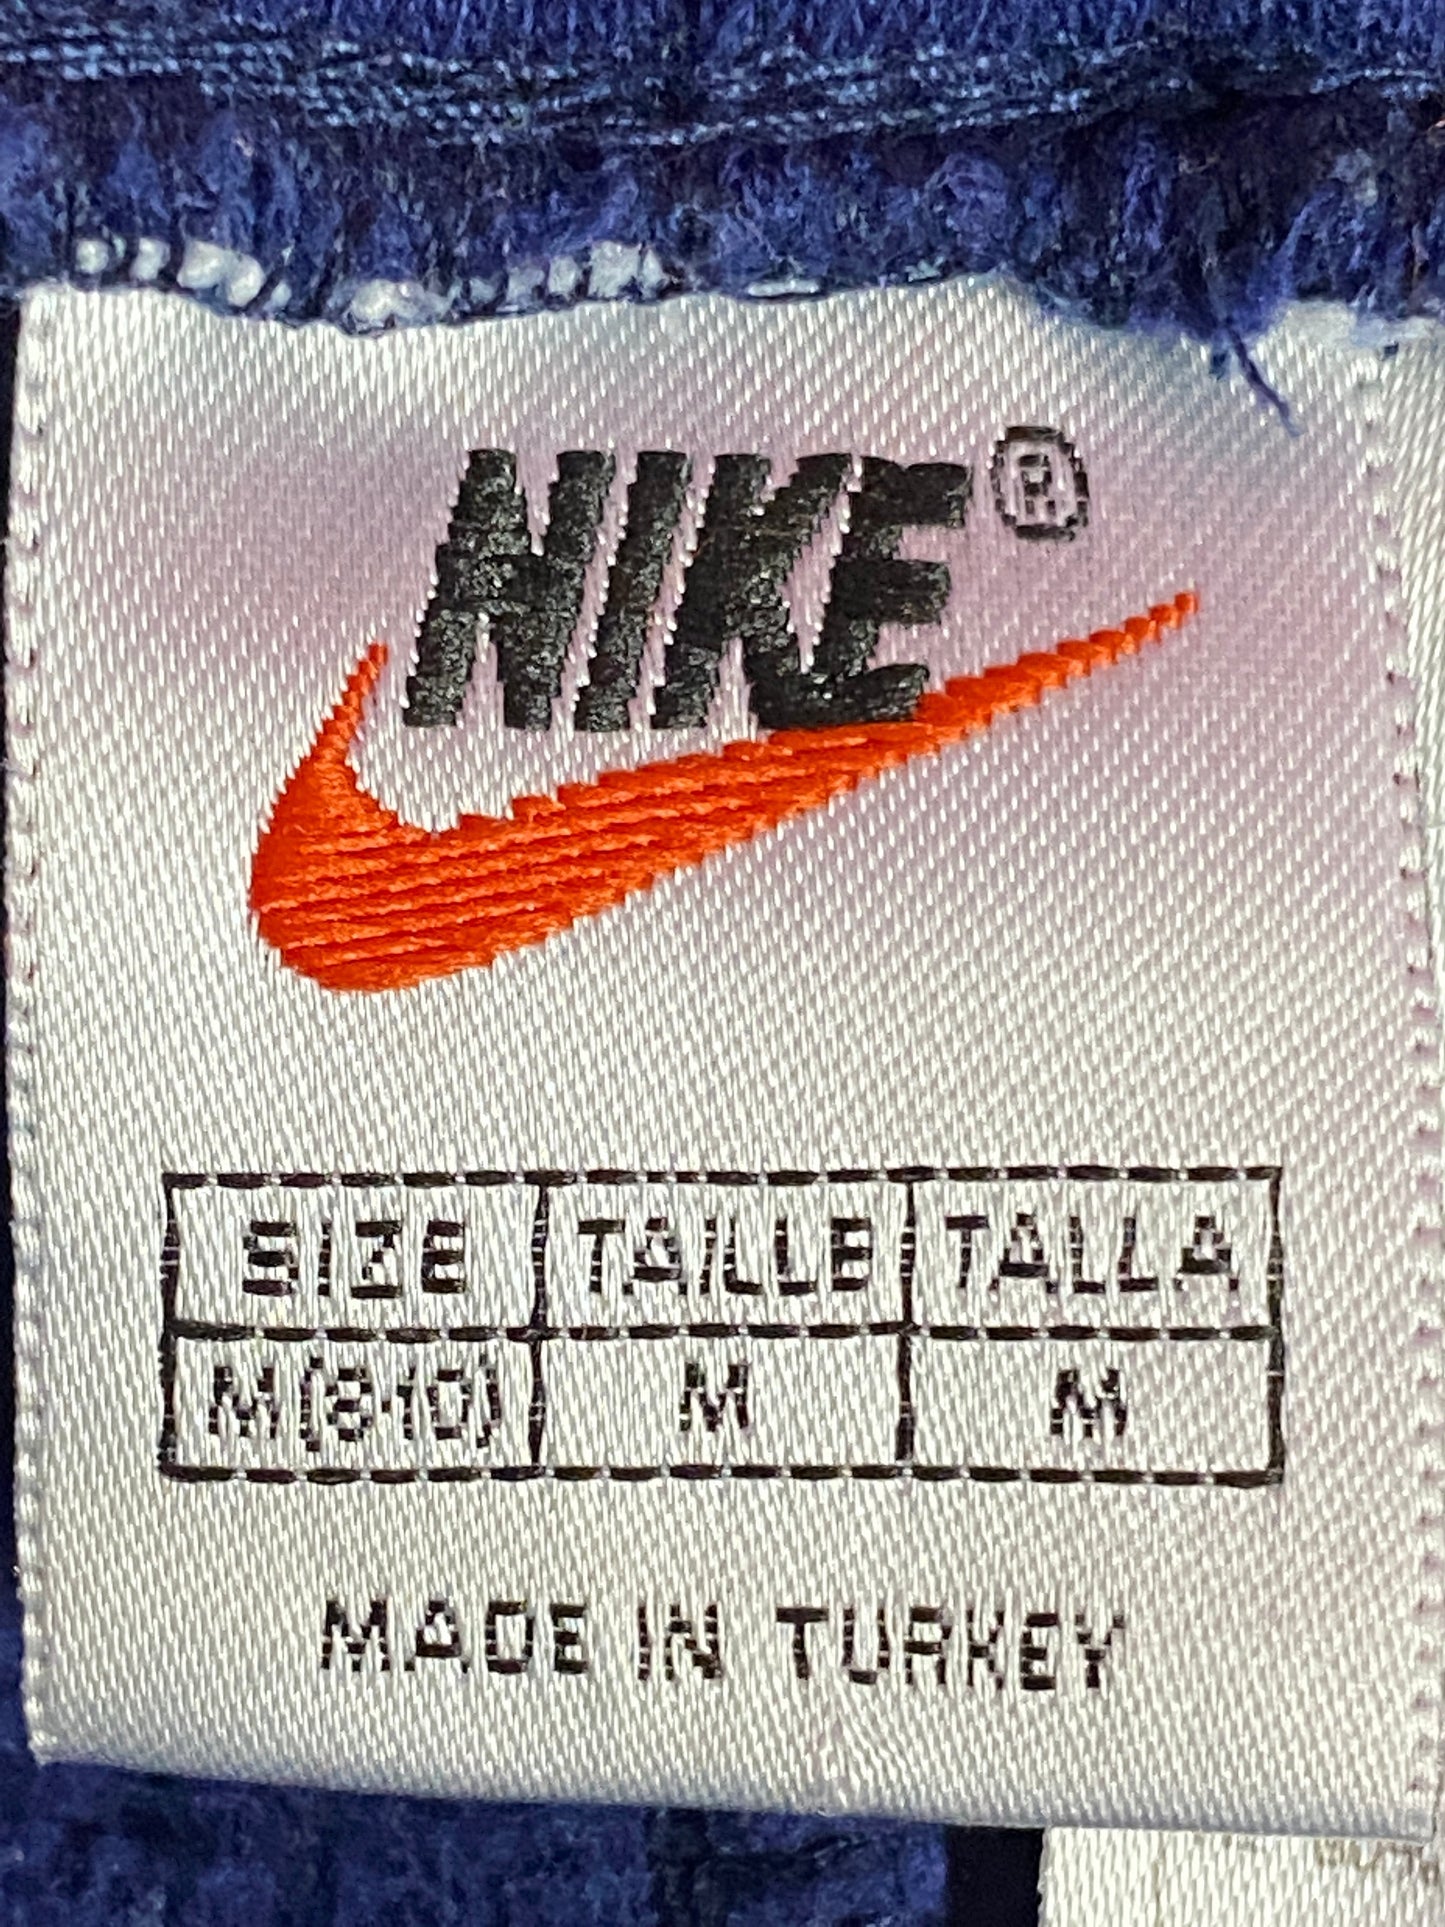 90s Nike Vintage Men's Sweatpants - Medium Blue Cotton Blend